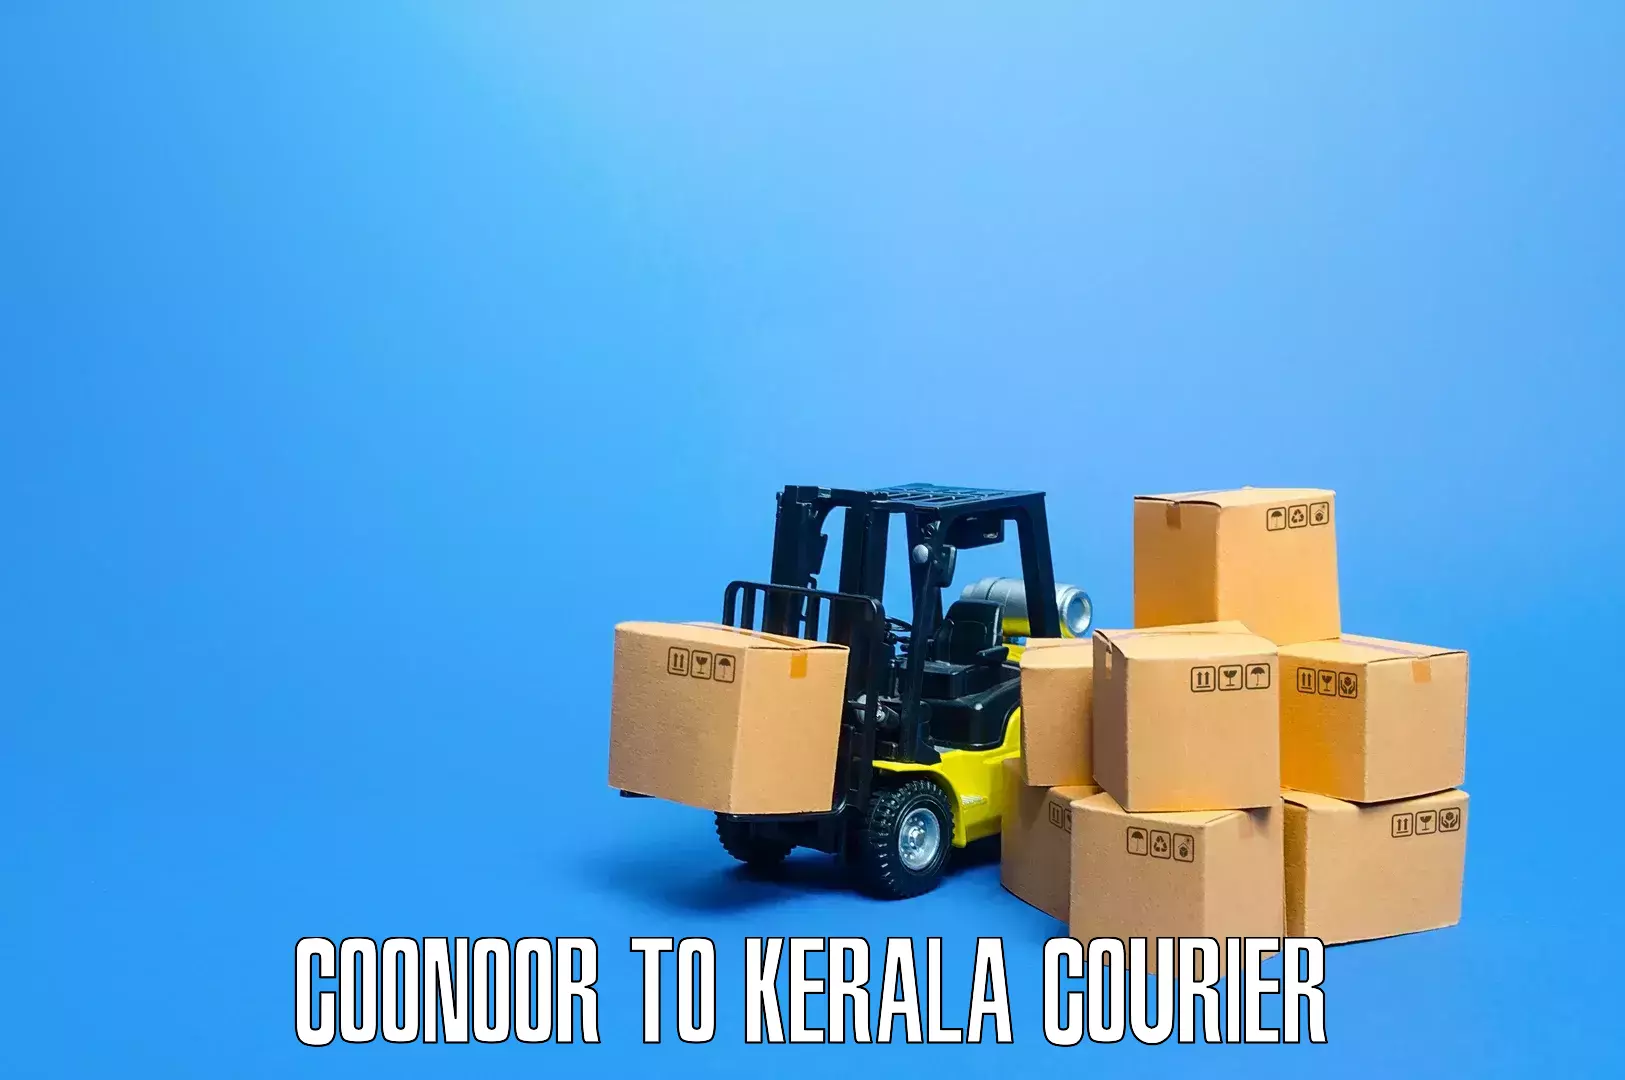 Furniture relocation services in Coonoor to Kothanalloor